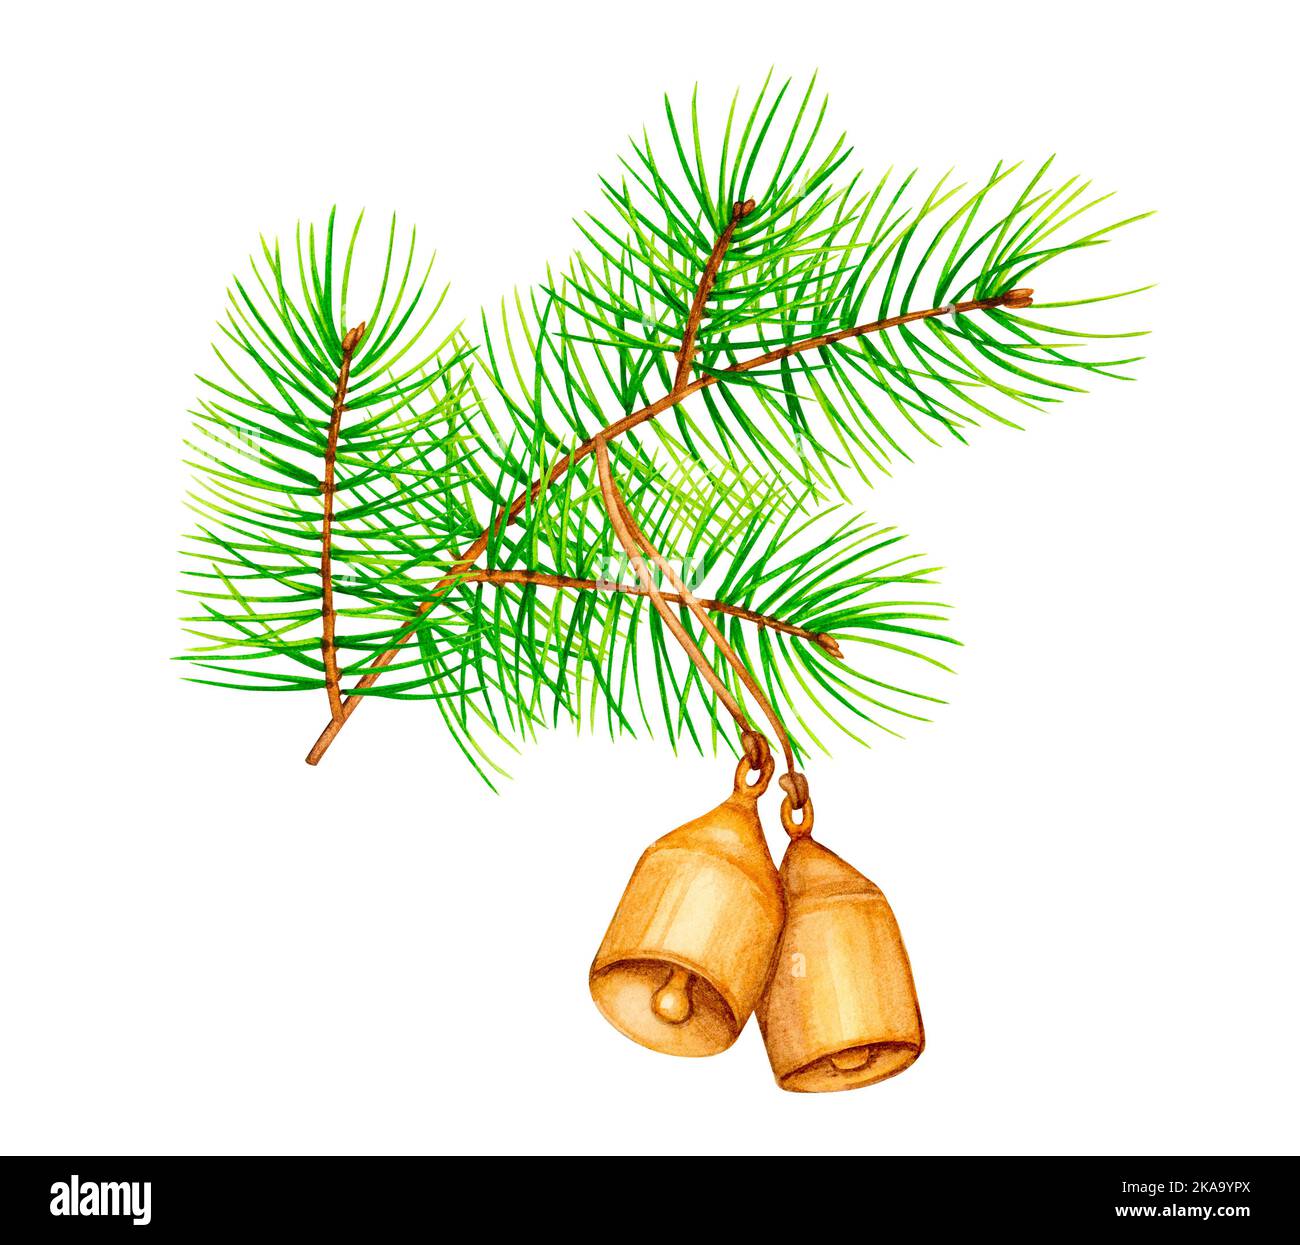 Rama del árbol de Navidad con campanas. Ilustración botánica de acuarela. Diseño elegante para embalaje, postales, invitaciones, papelería, tarjetas de felicitación. Foto de stock